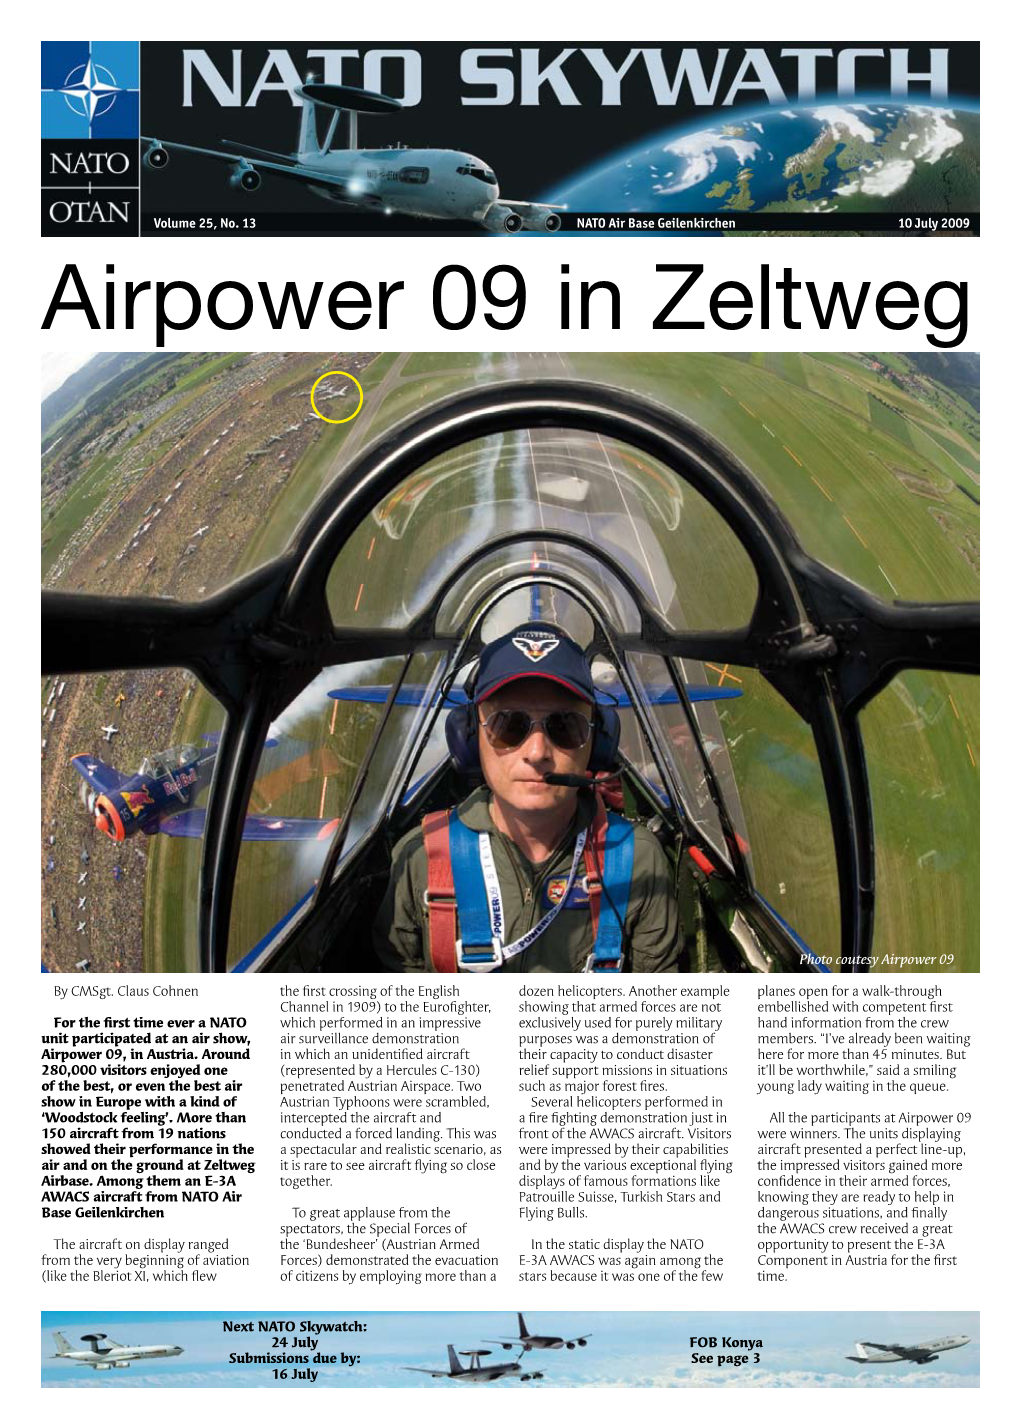 Airpower 09 in Zeltweg